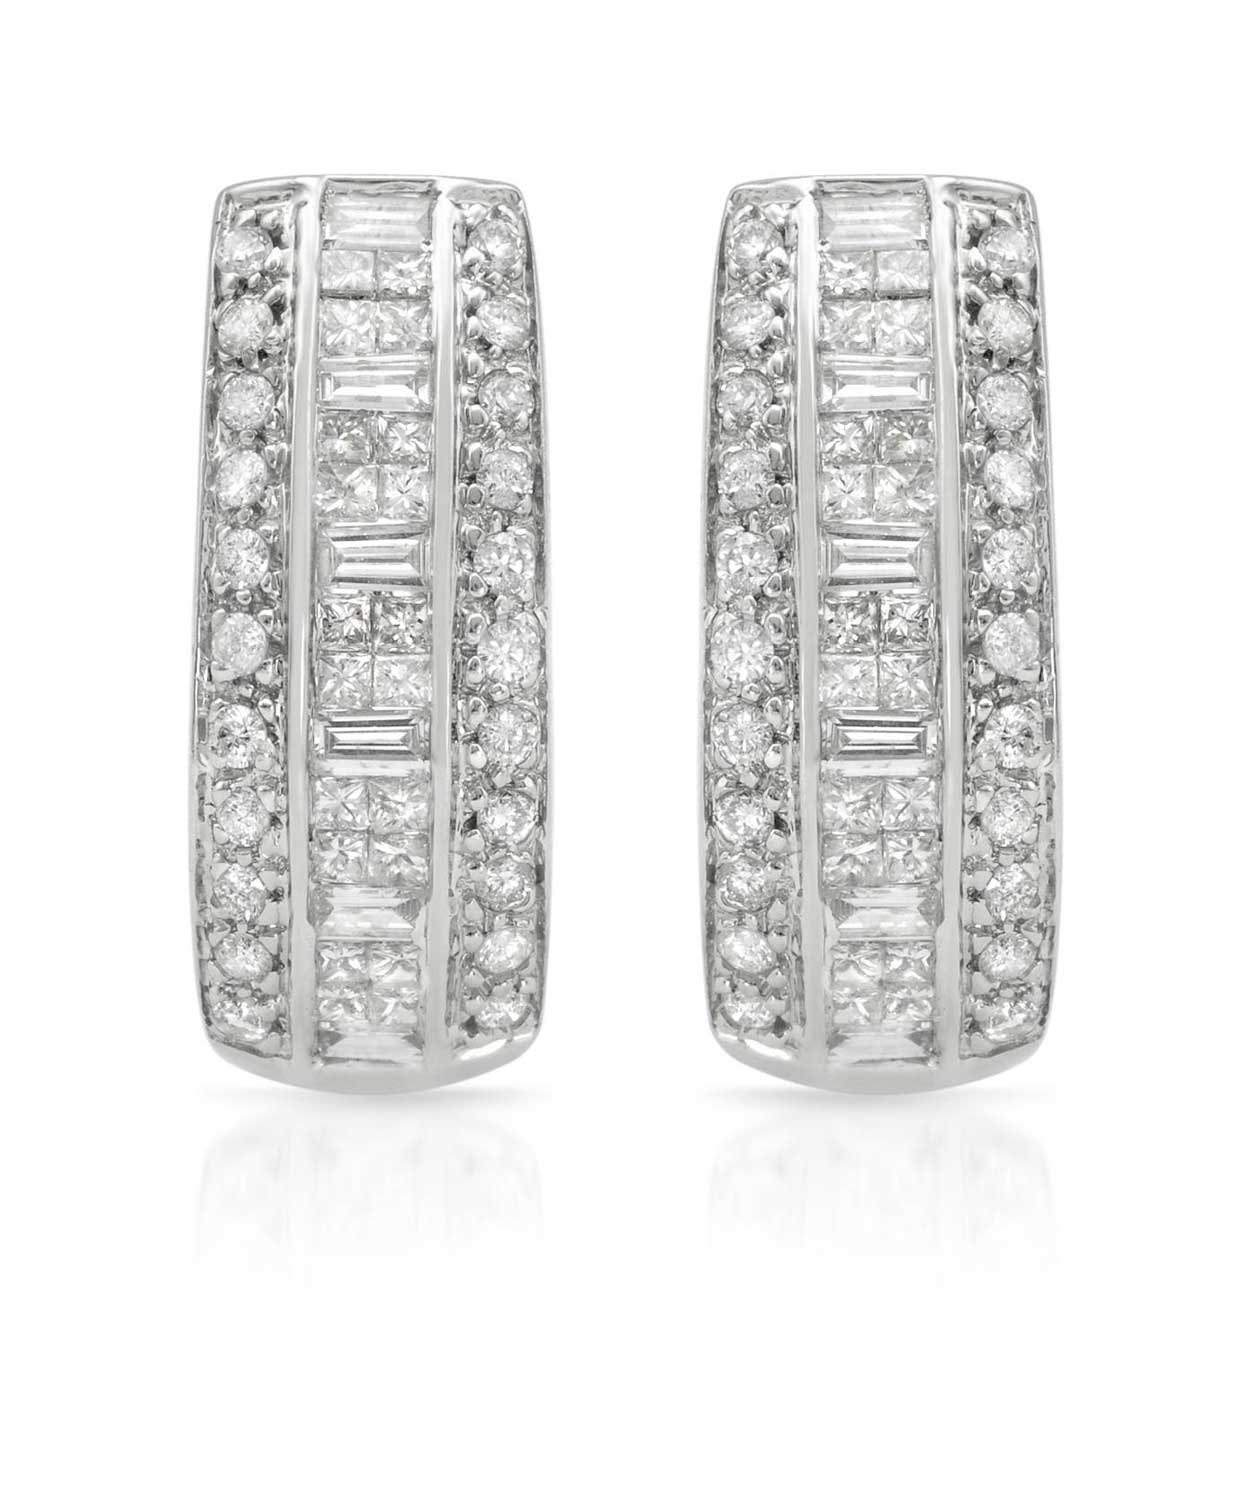 1.52 ctw Diamonds 14k White Gold Fashion Earrings View 1